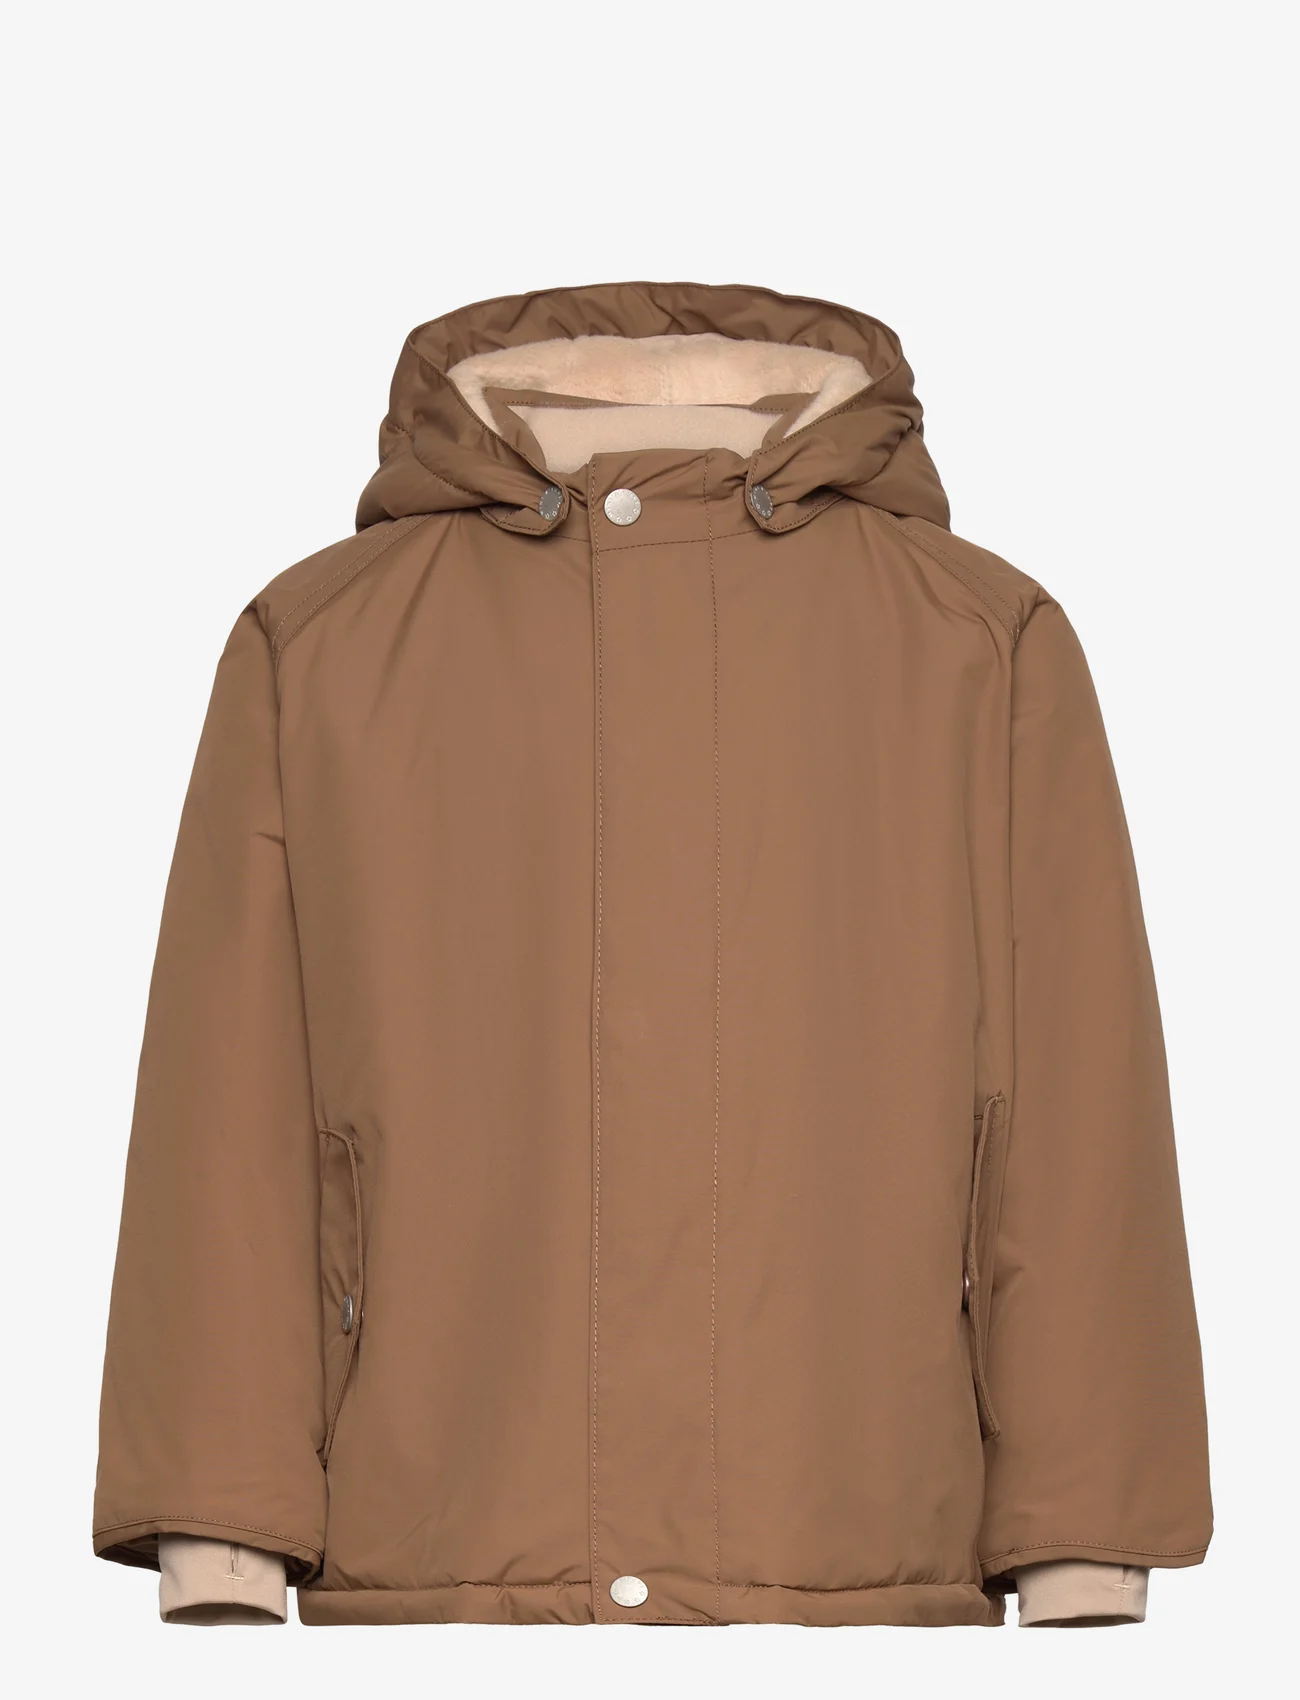 Mini A Ture - Wally fleece lined winter jacket. GRS - winter jackets - wood - 0